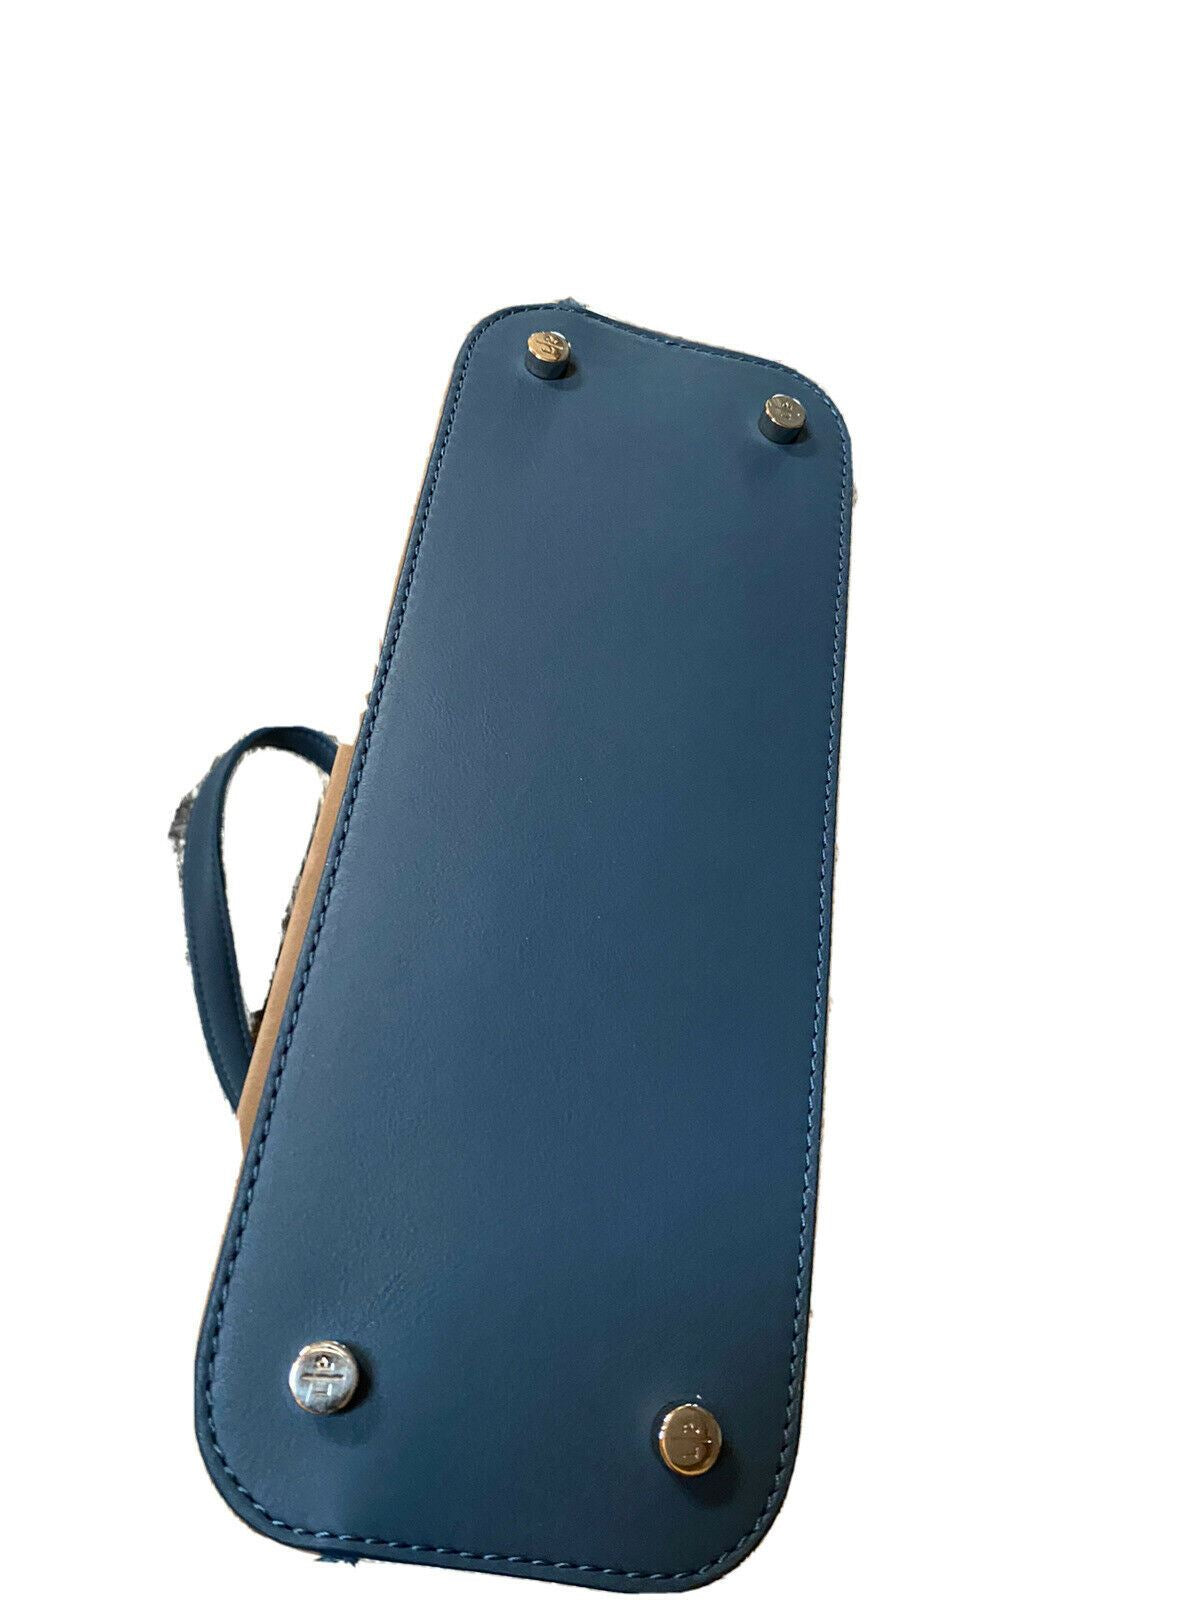 Новая женская маленькая большая сумка из холста/кожи Loro Piana за 3100 долларов, разноцветная, Италия